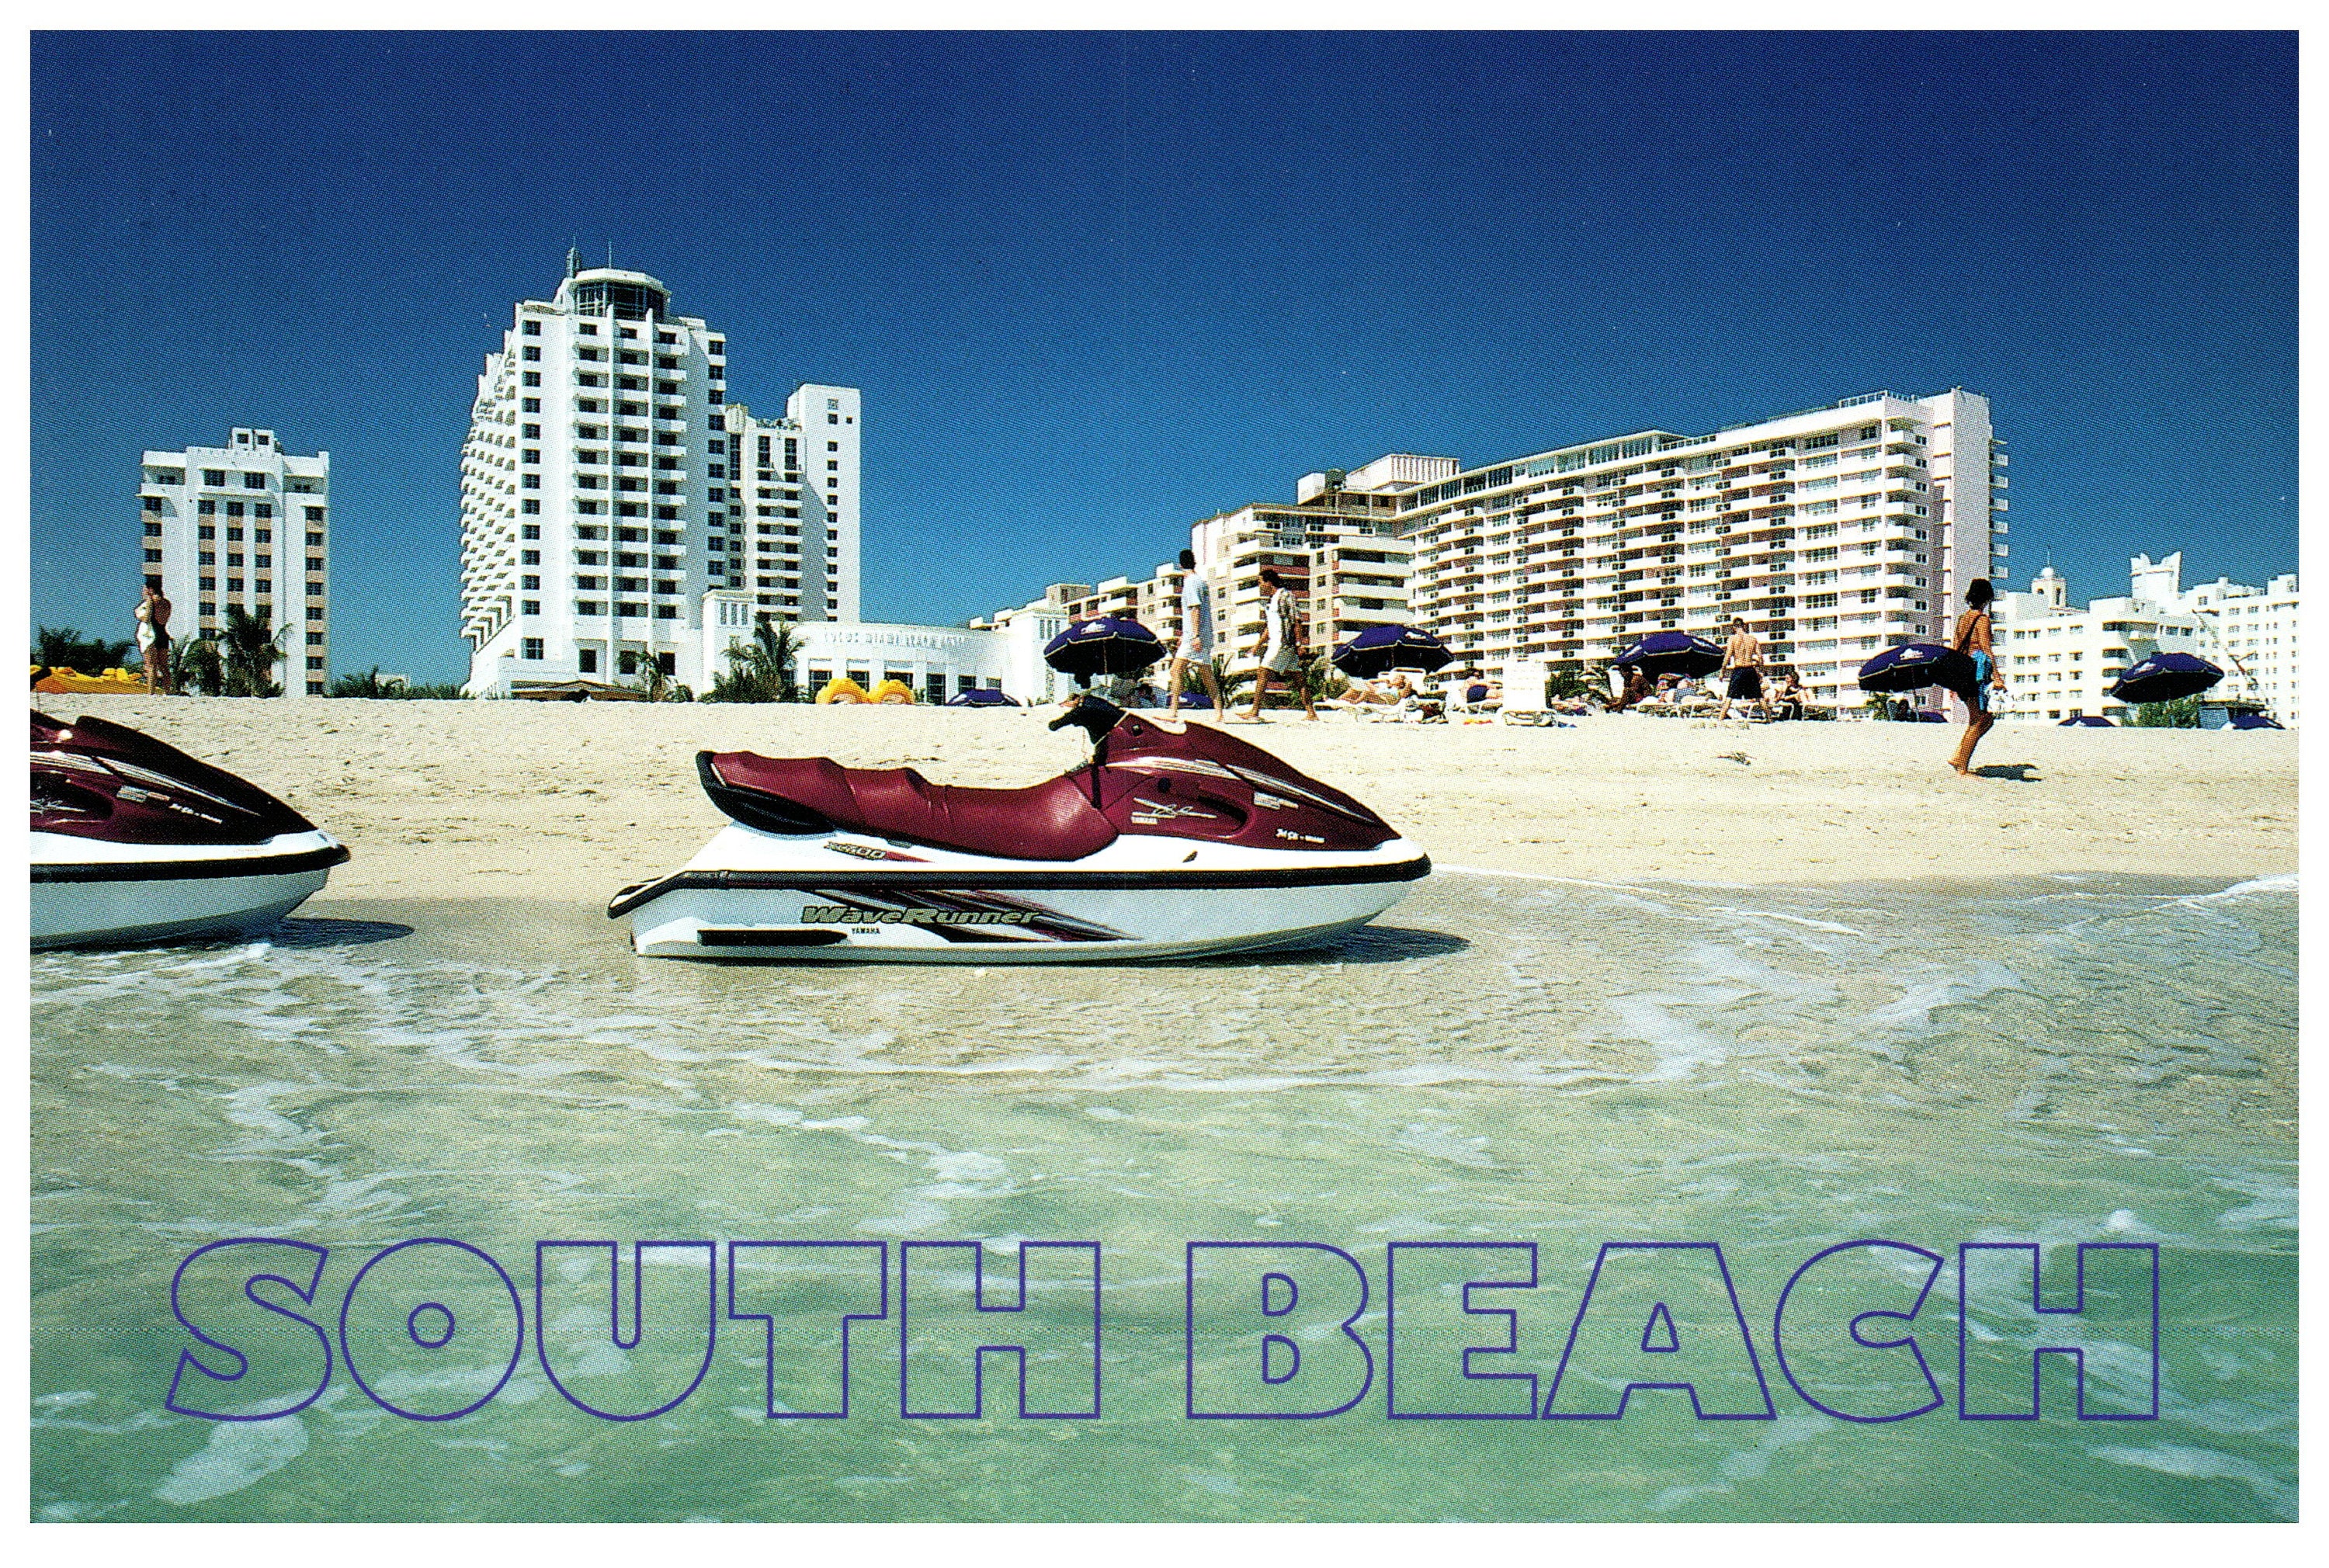 VINTAGE Florida FL Miami & Miami Beach Postcard Pack